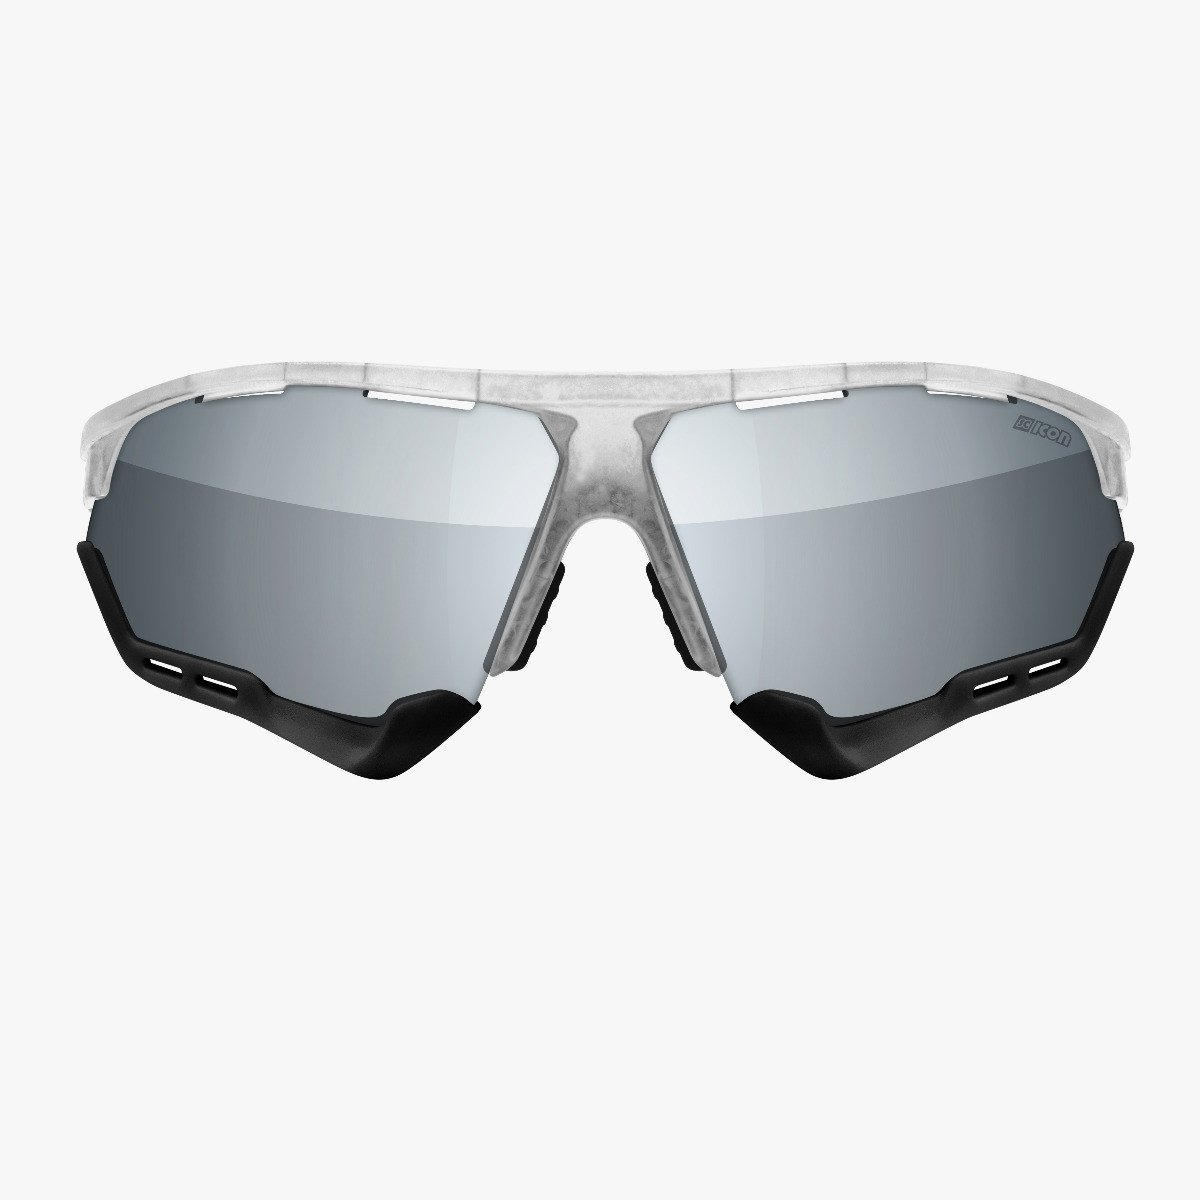 Aerocomfort performance sunglasses scnpp frozen frame silver lenses EY19080505
